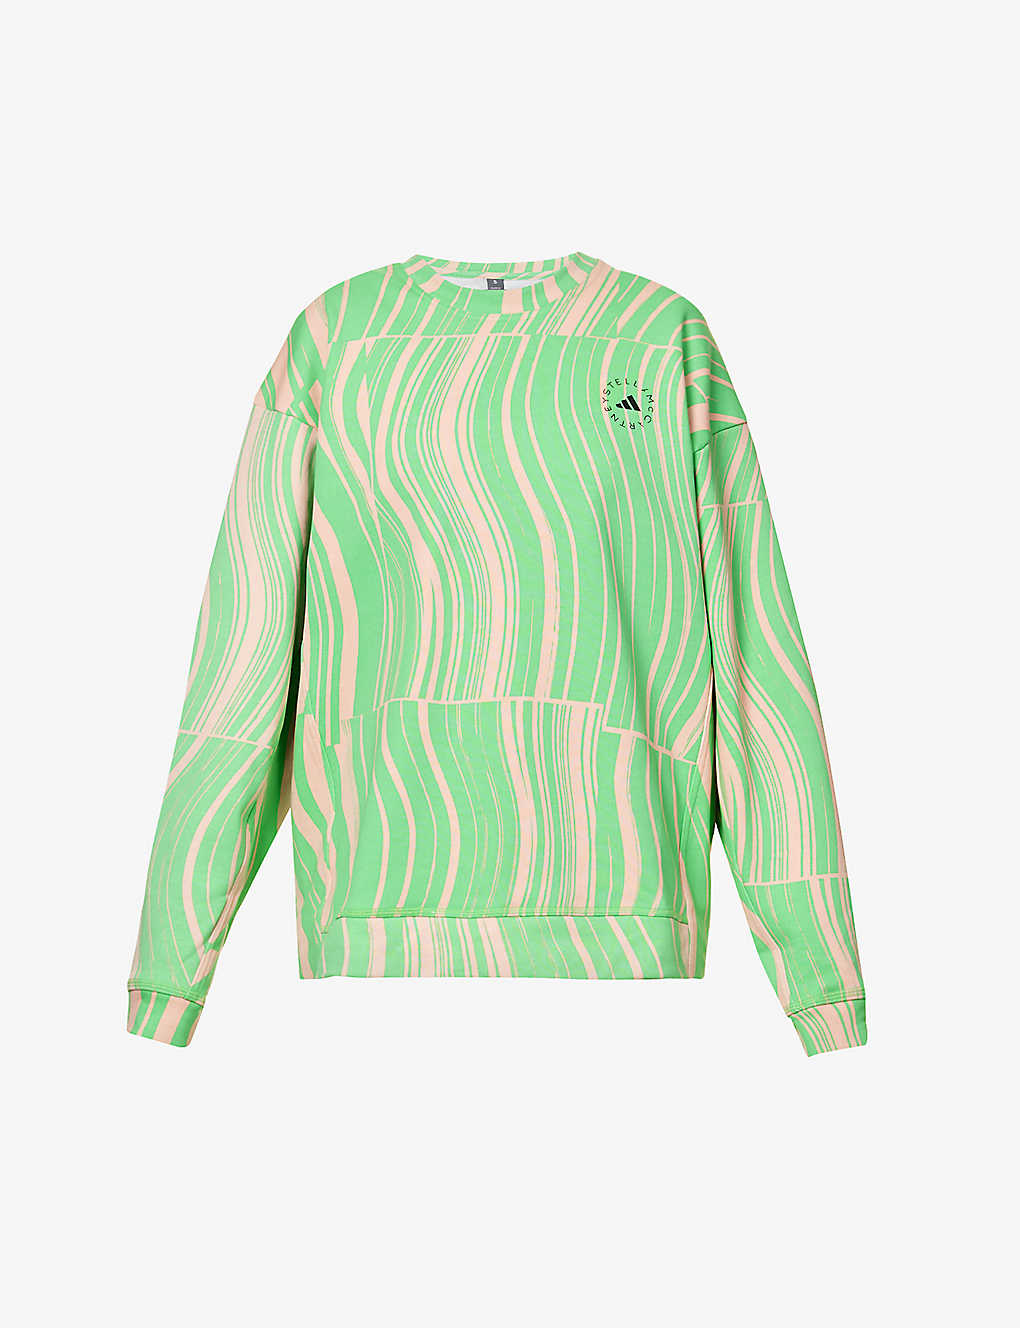 Adidas By Stella Mccartney True Casuals Sweatshirt In Scream Grn/blush Pink